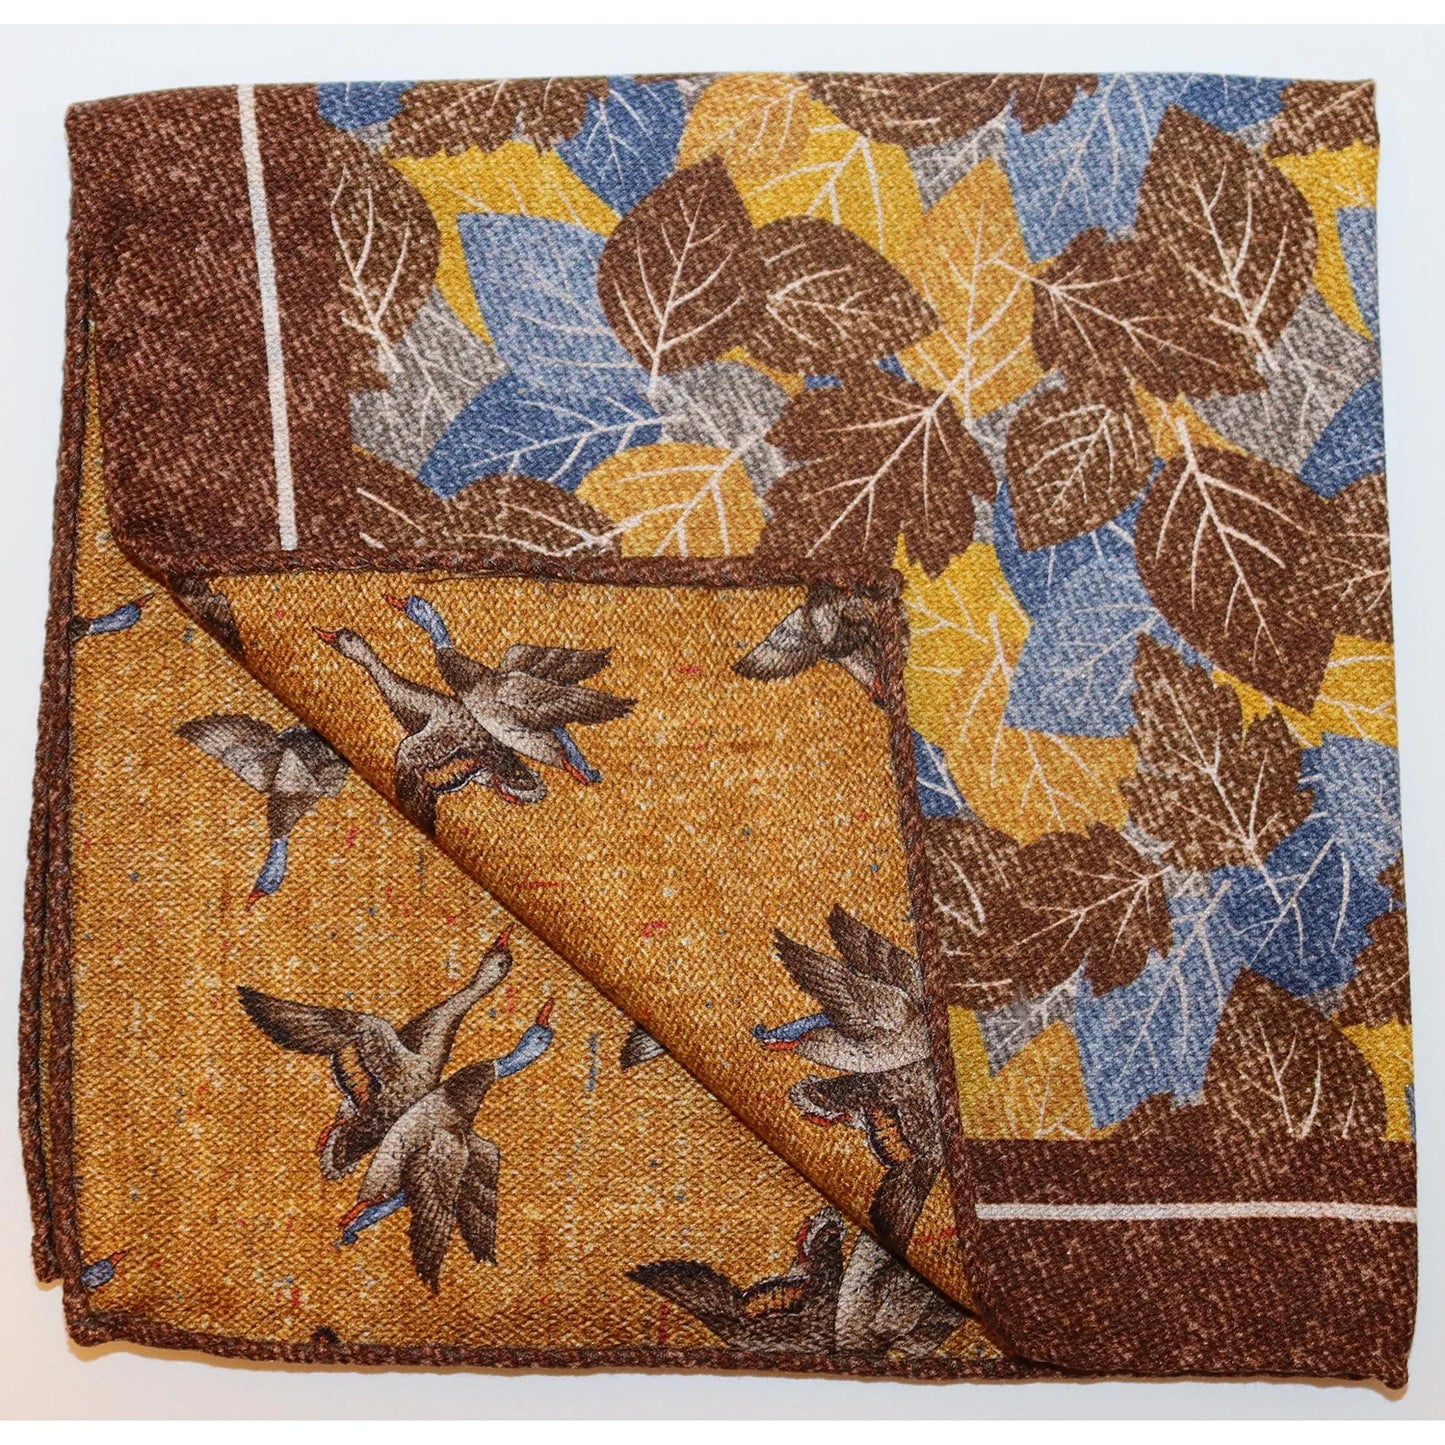 R. Hanauer Pocket Square - Leaves/Mallard Ducks (2 Colors)